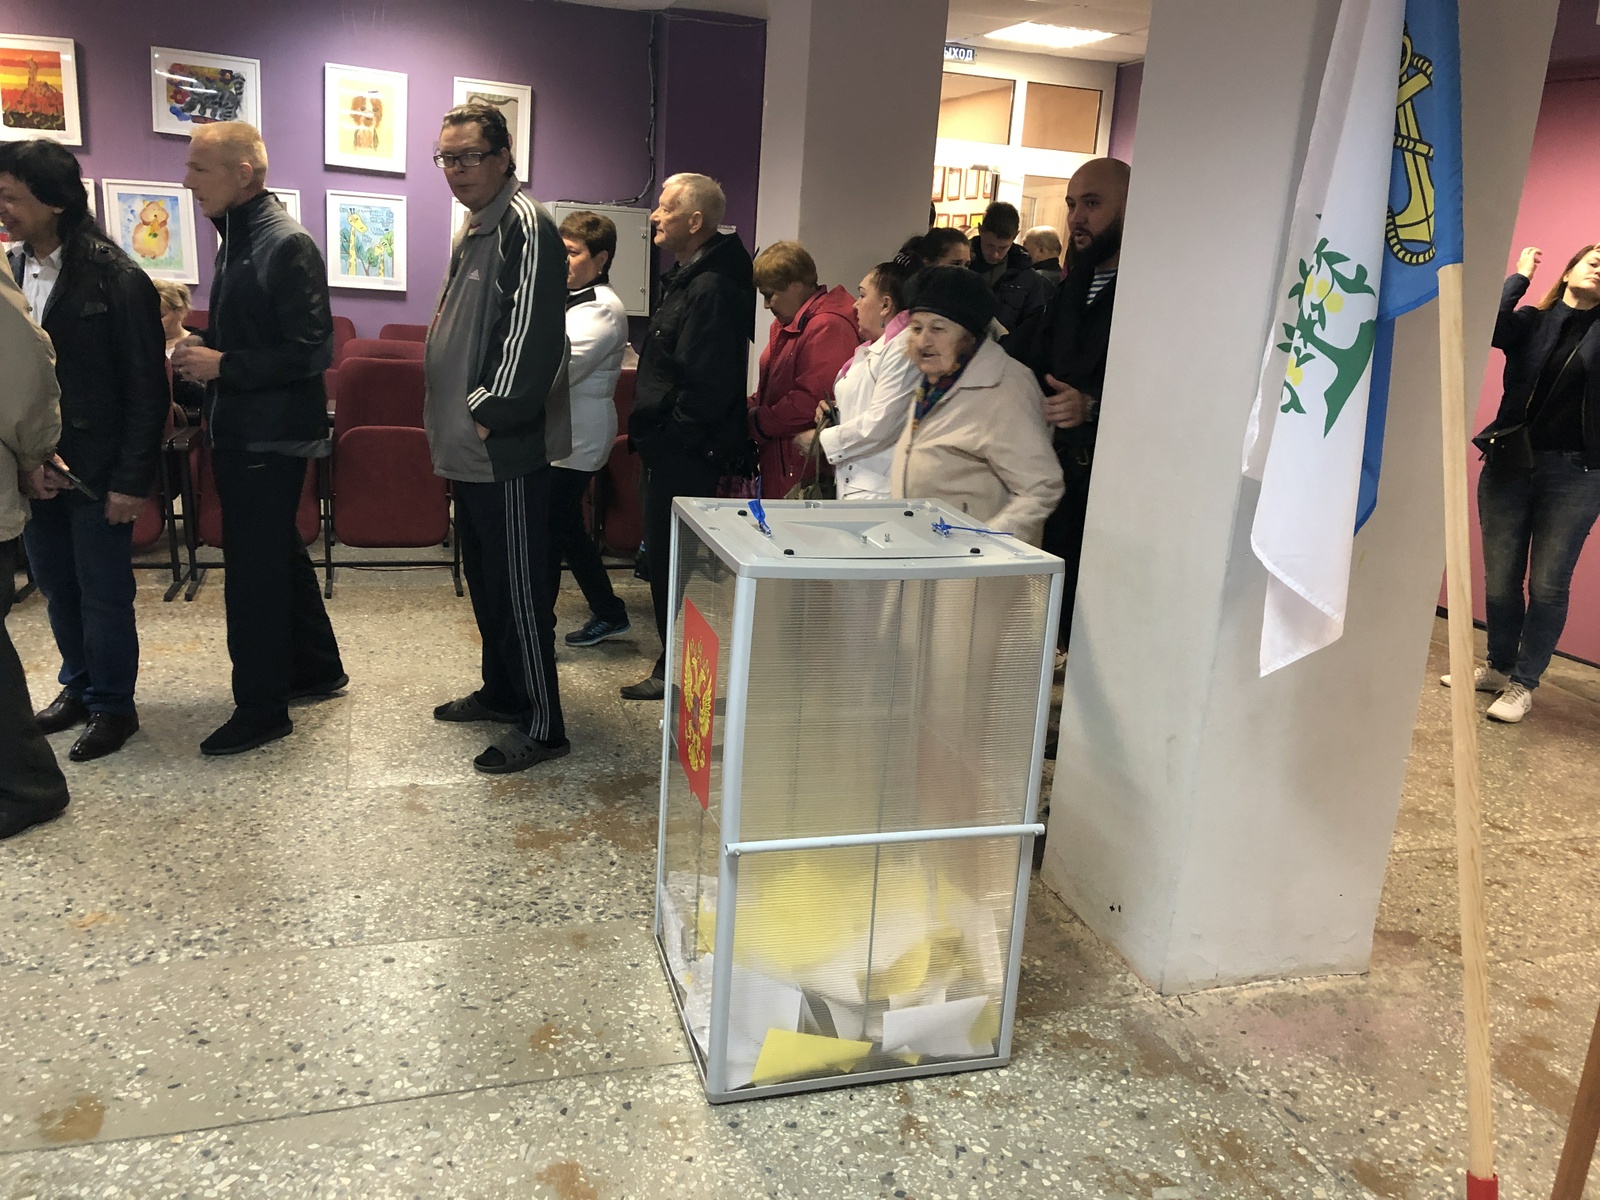   Единый день предварительного голосования «Единой России». Ленинградская область